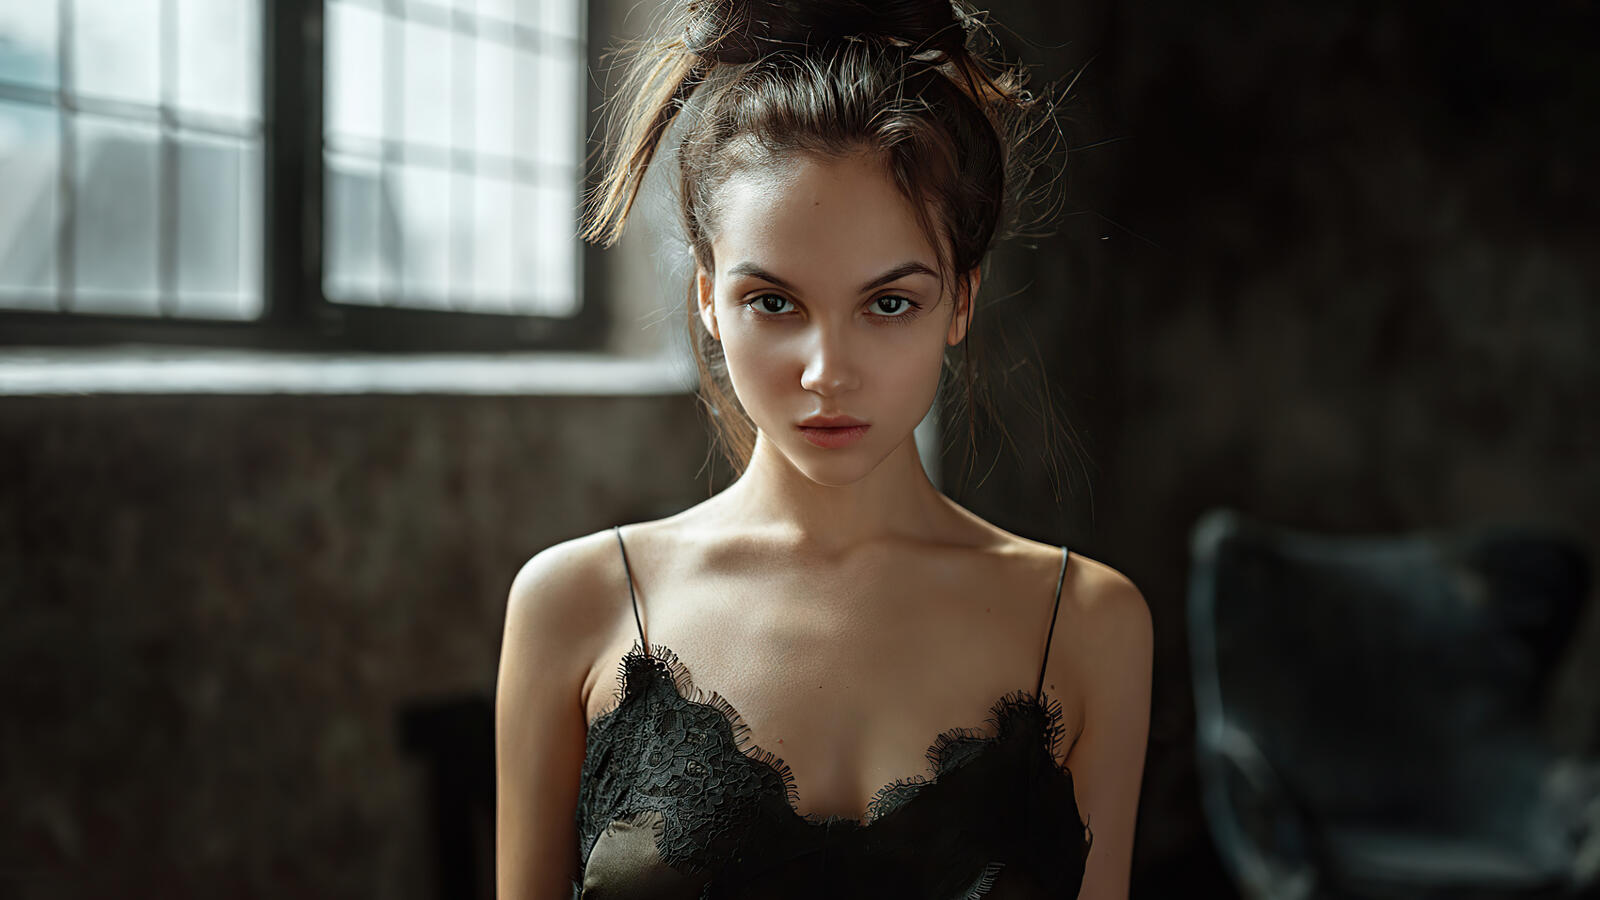 Бесплатное фото Портрет девушки с карими глазами в черной ночнушке